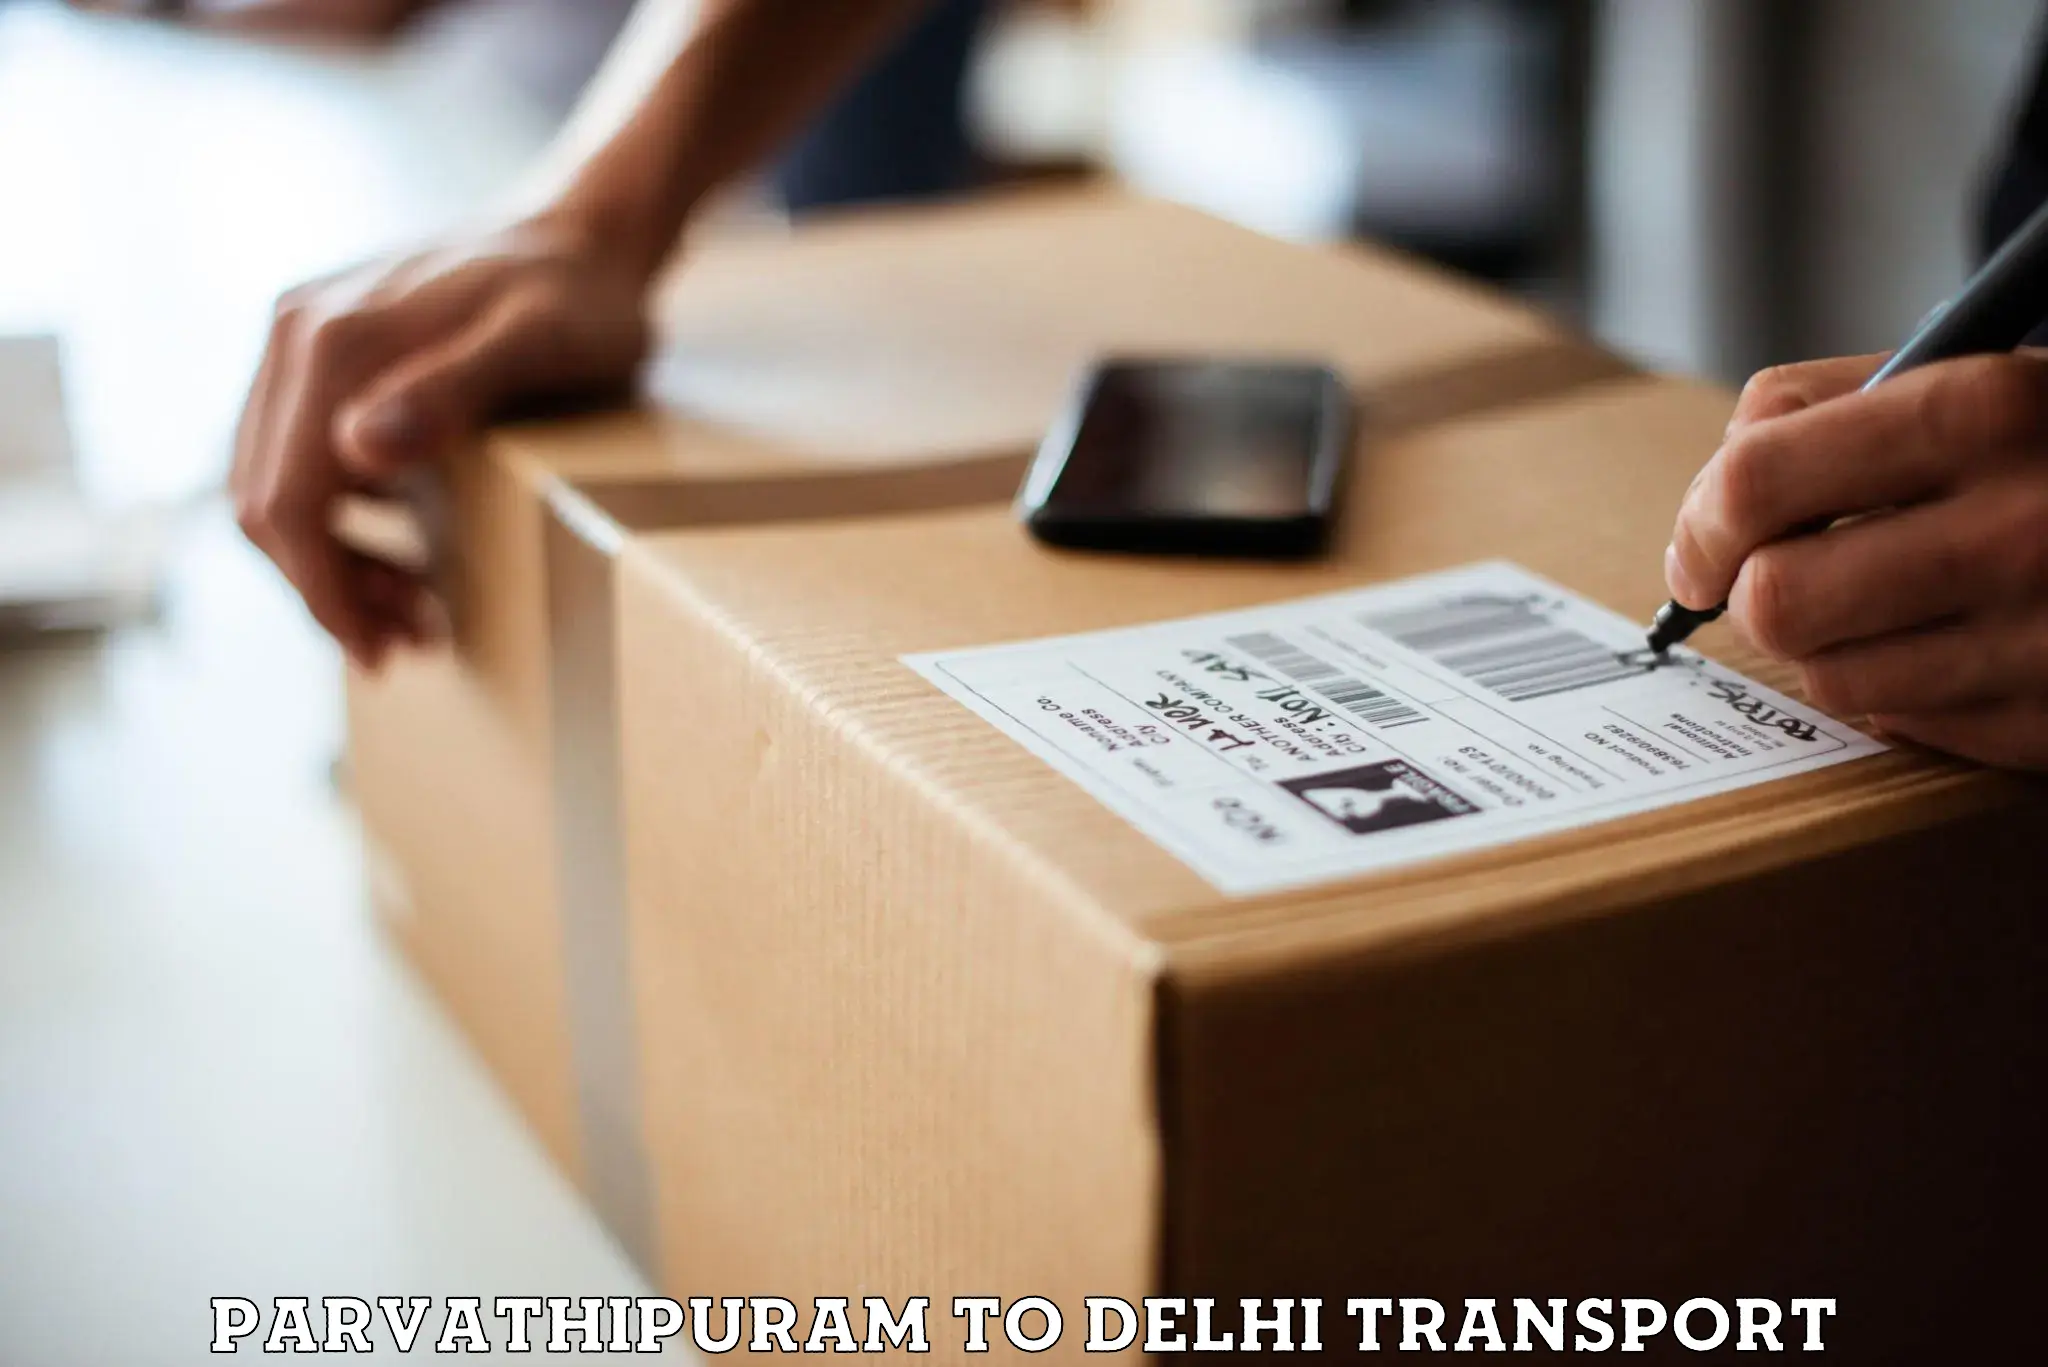 Parcel transport services Parvathipuram to NIT Delhi